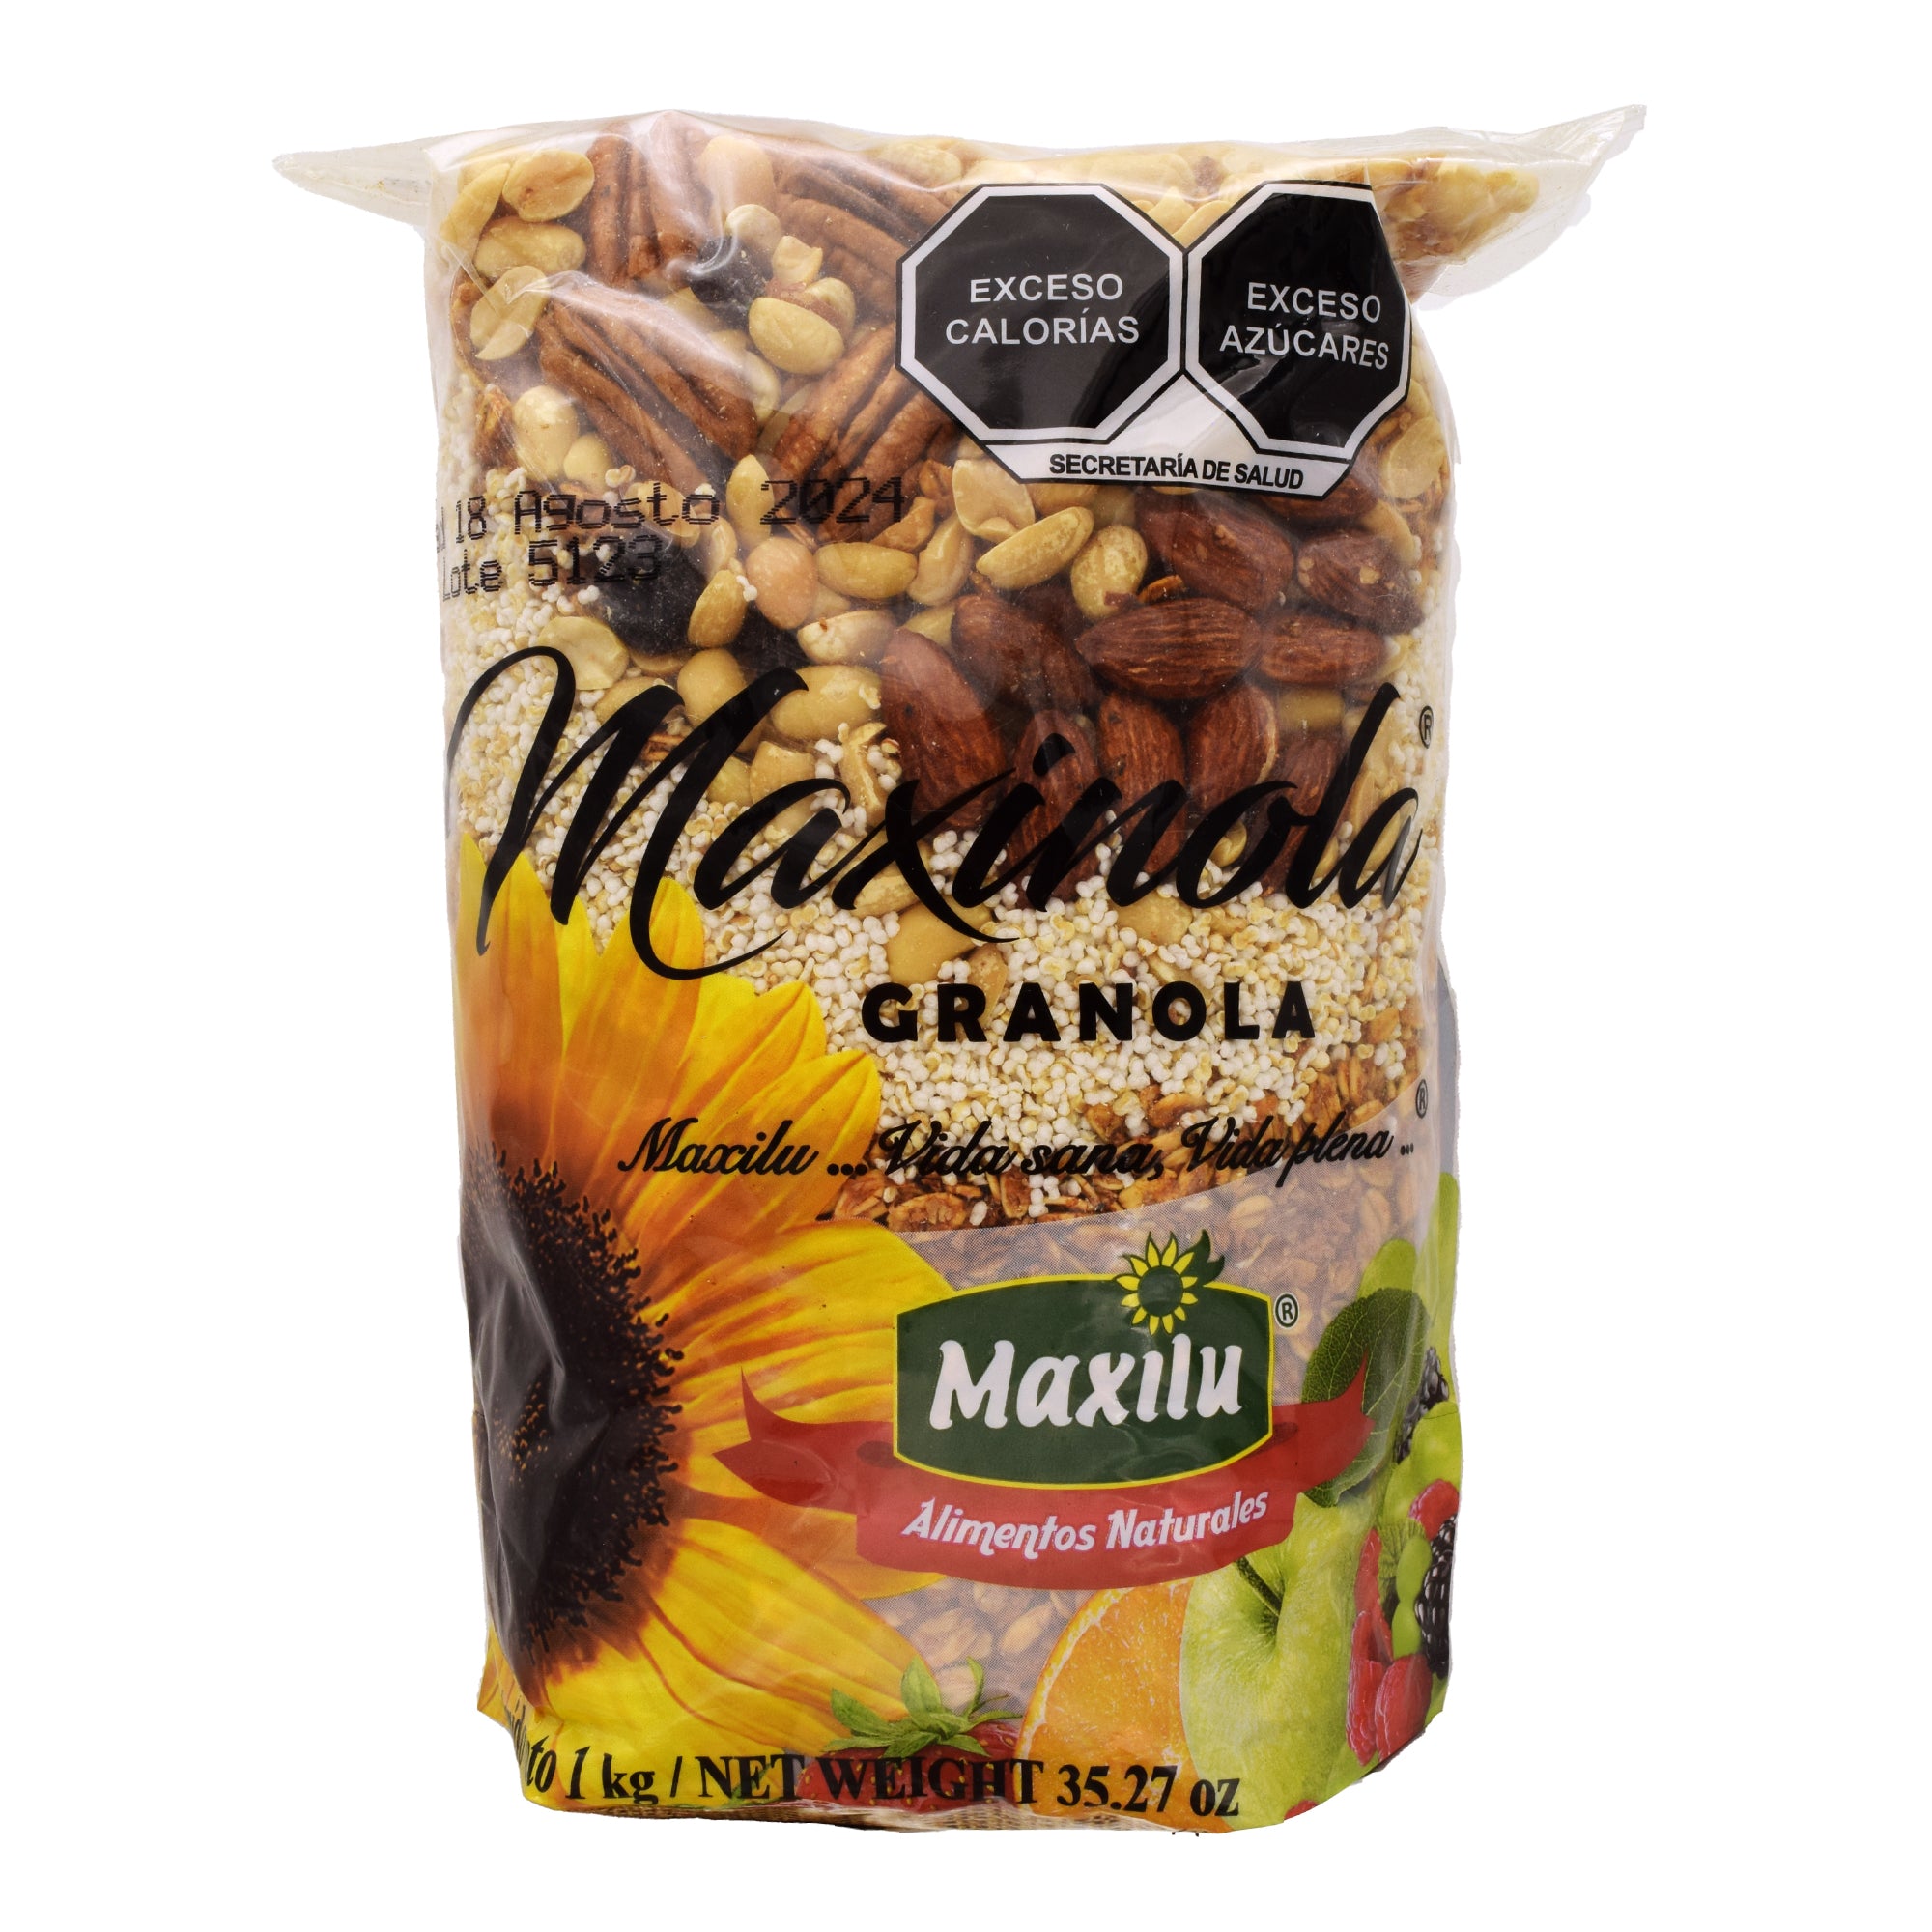 Granola Maxinola 1 Kg